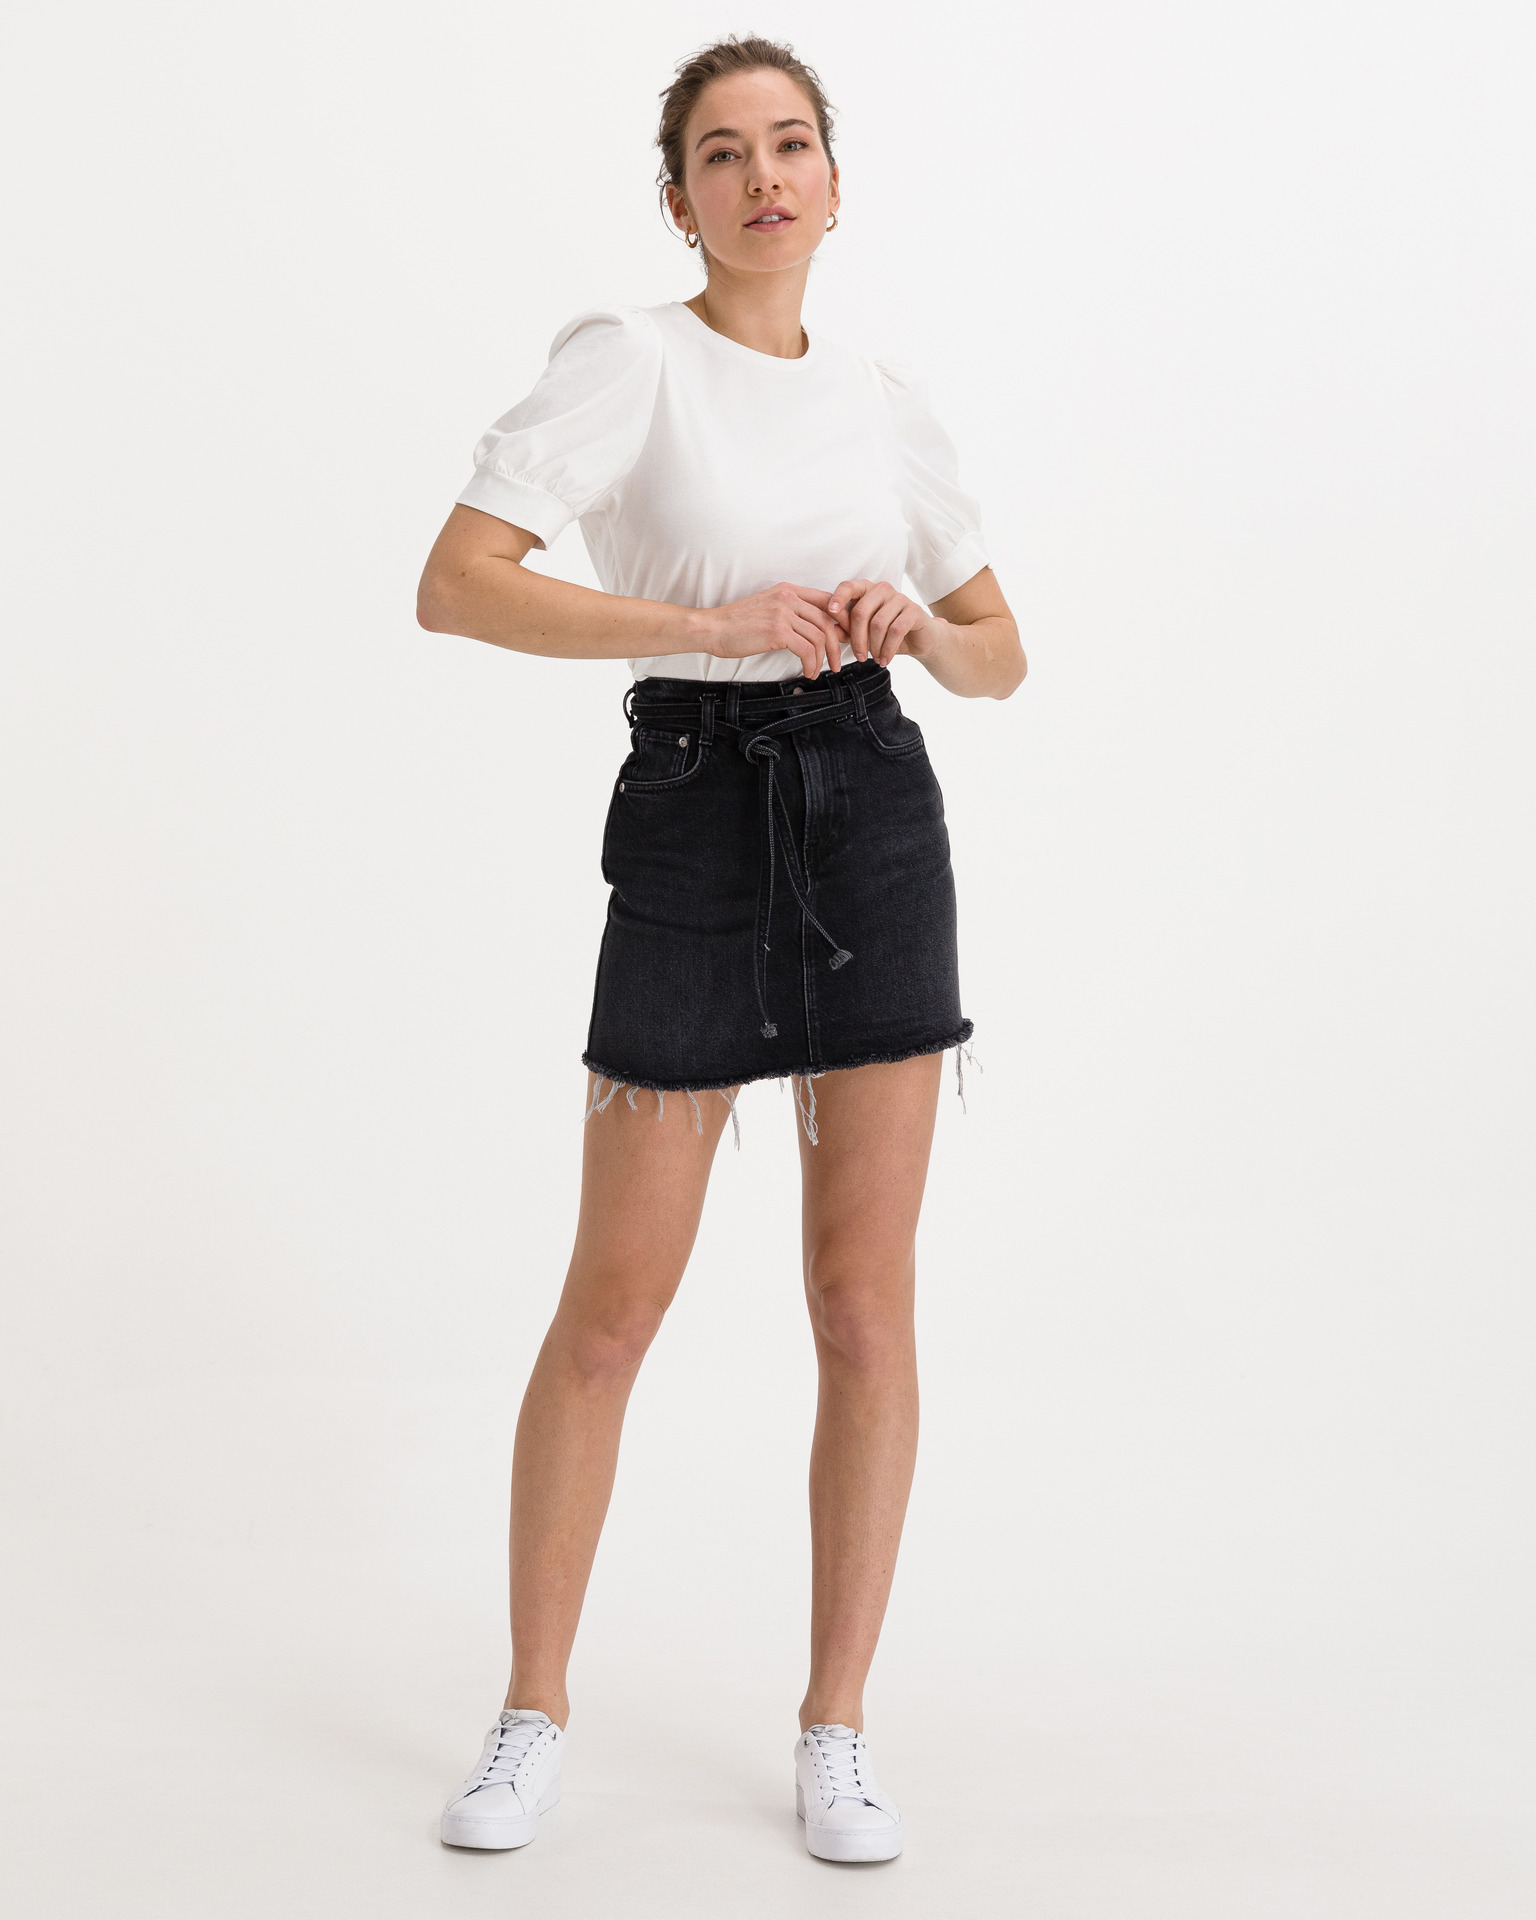 現品限り一斉値下げ！ スポーツ・アウトドア ペペジーンズ Jeans Pepe スカート denim - skirt Mini - BELT SKIRT RACHEL スカート